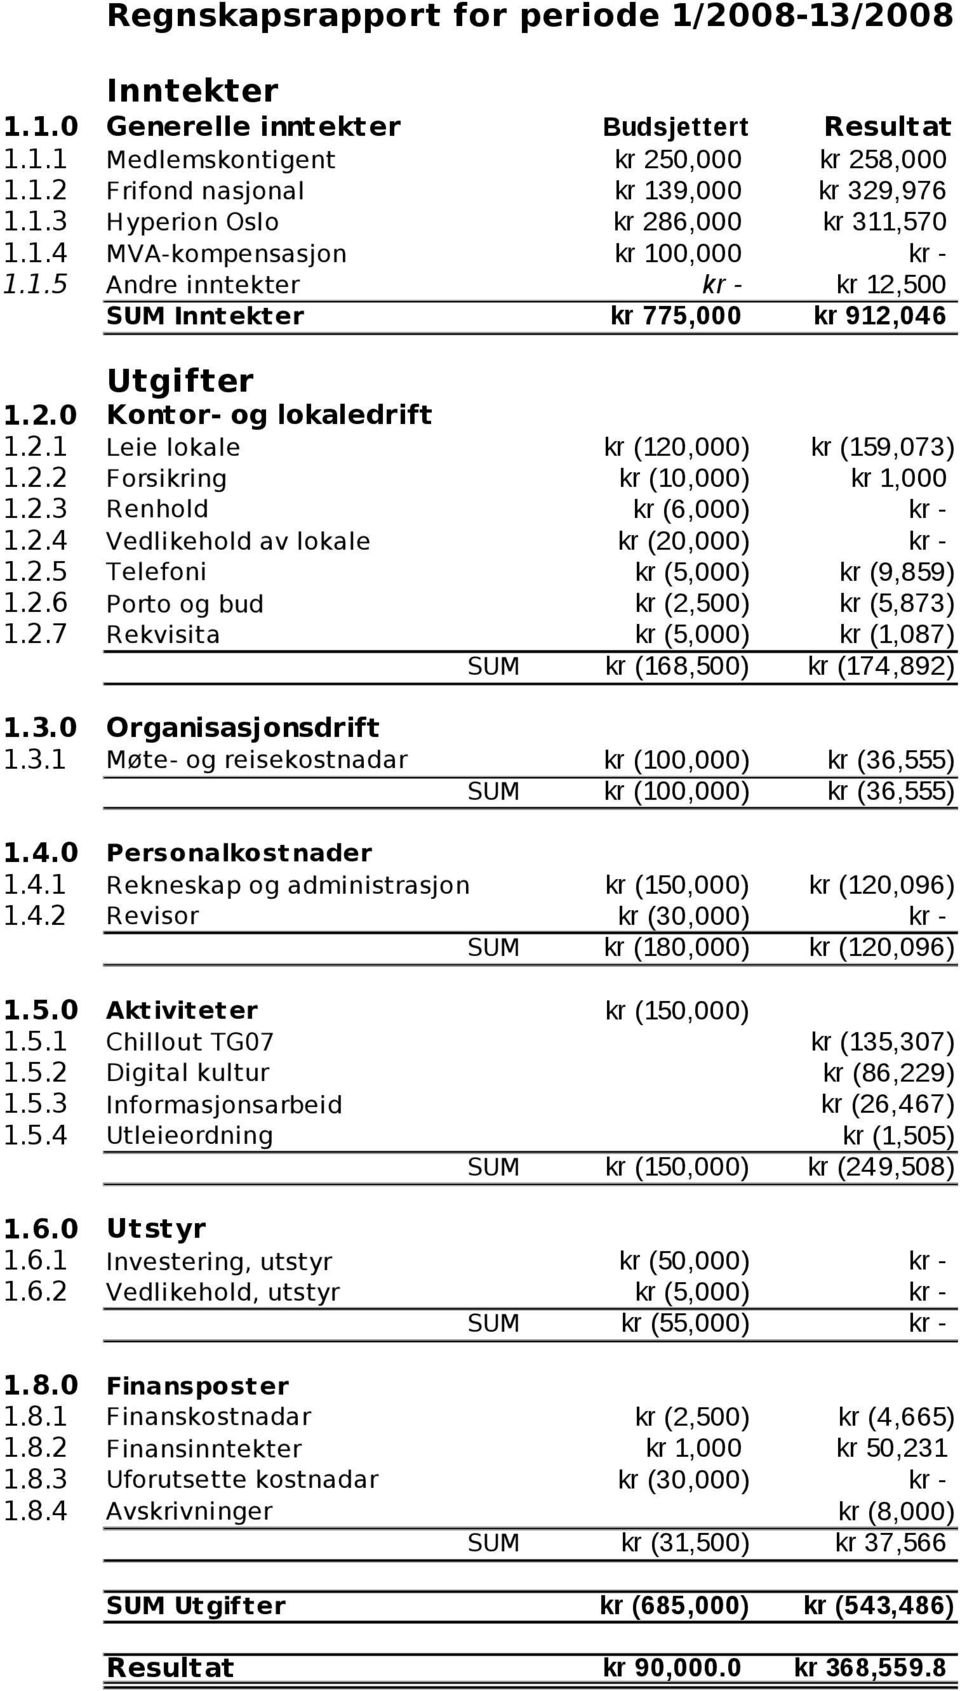 2.3 Renhold kr (6,000) kr - 1.2.4 Vedlikehold av lokale kr (20,000) kr - 1.2.5 Telefoni kr (5,000) kr (9,859) 1.2.6 Porto og bud kr (2,500) kr (5,873) 1.2.7 Rekvisita kr (5,000) kr (1,087) SUM kr (168,500) kr (174,892) 1.